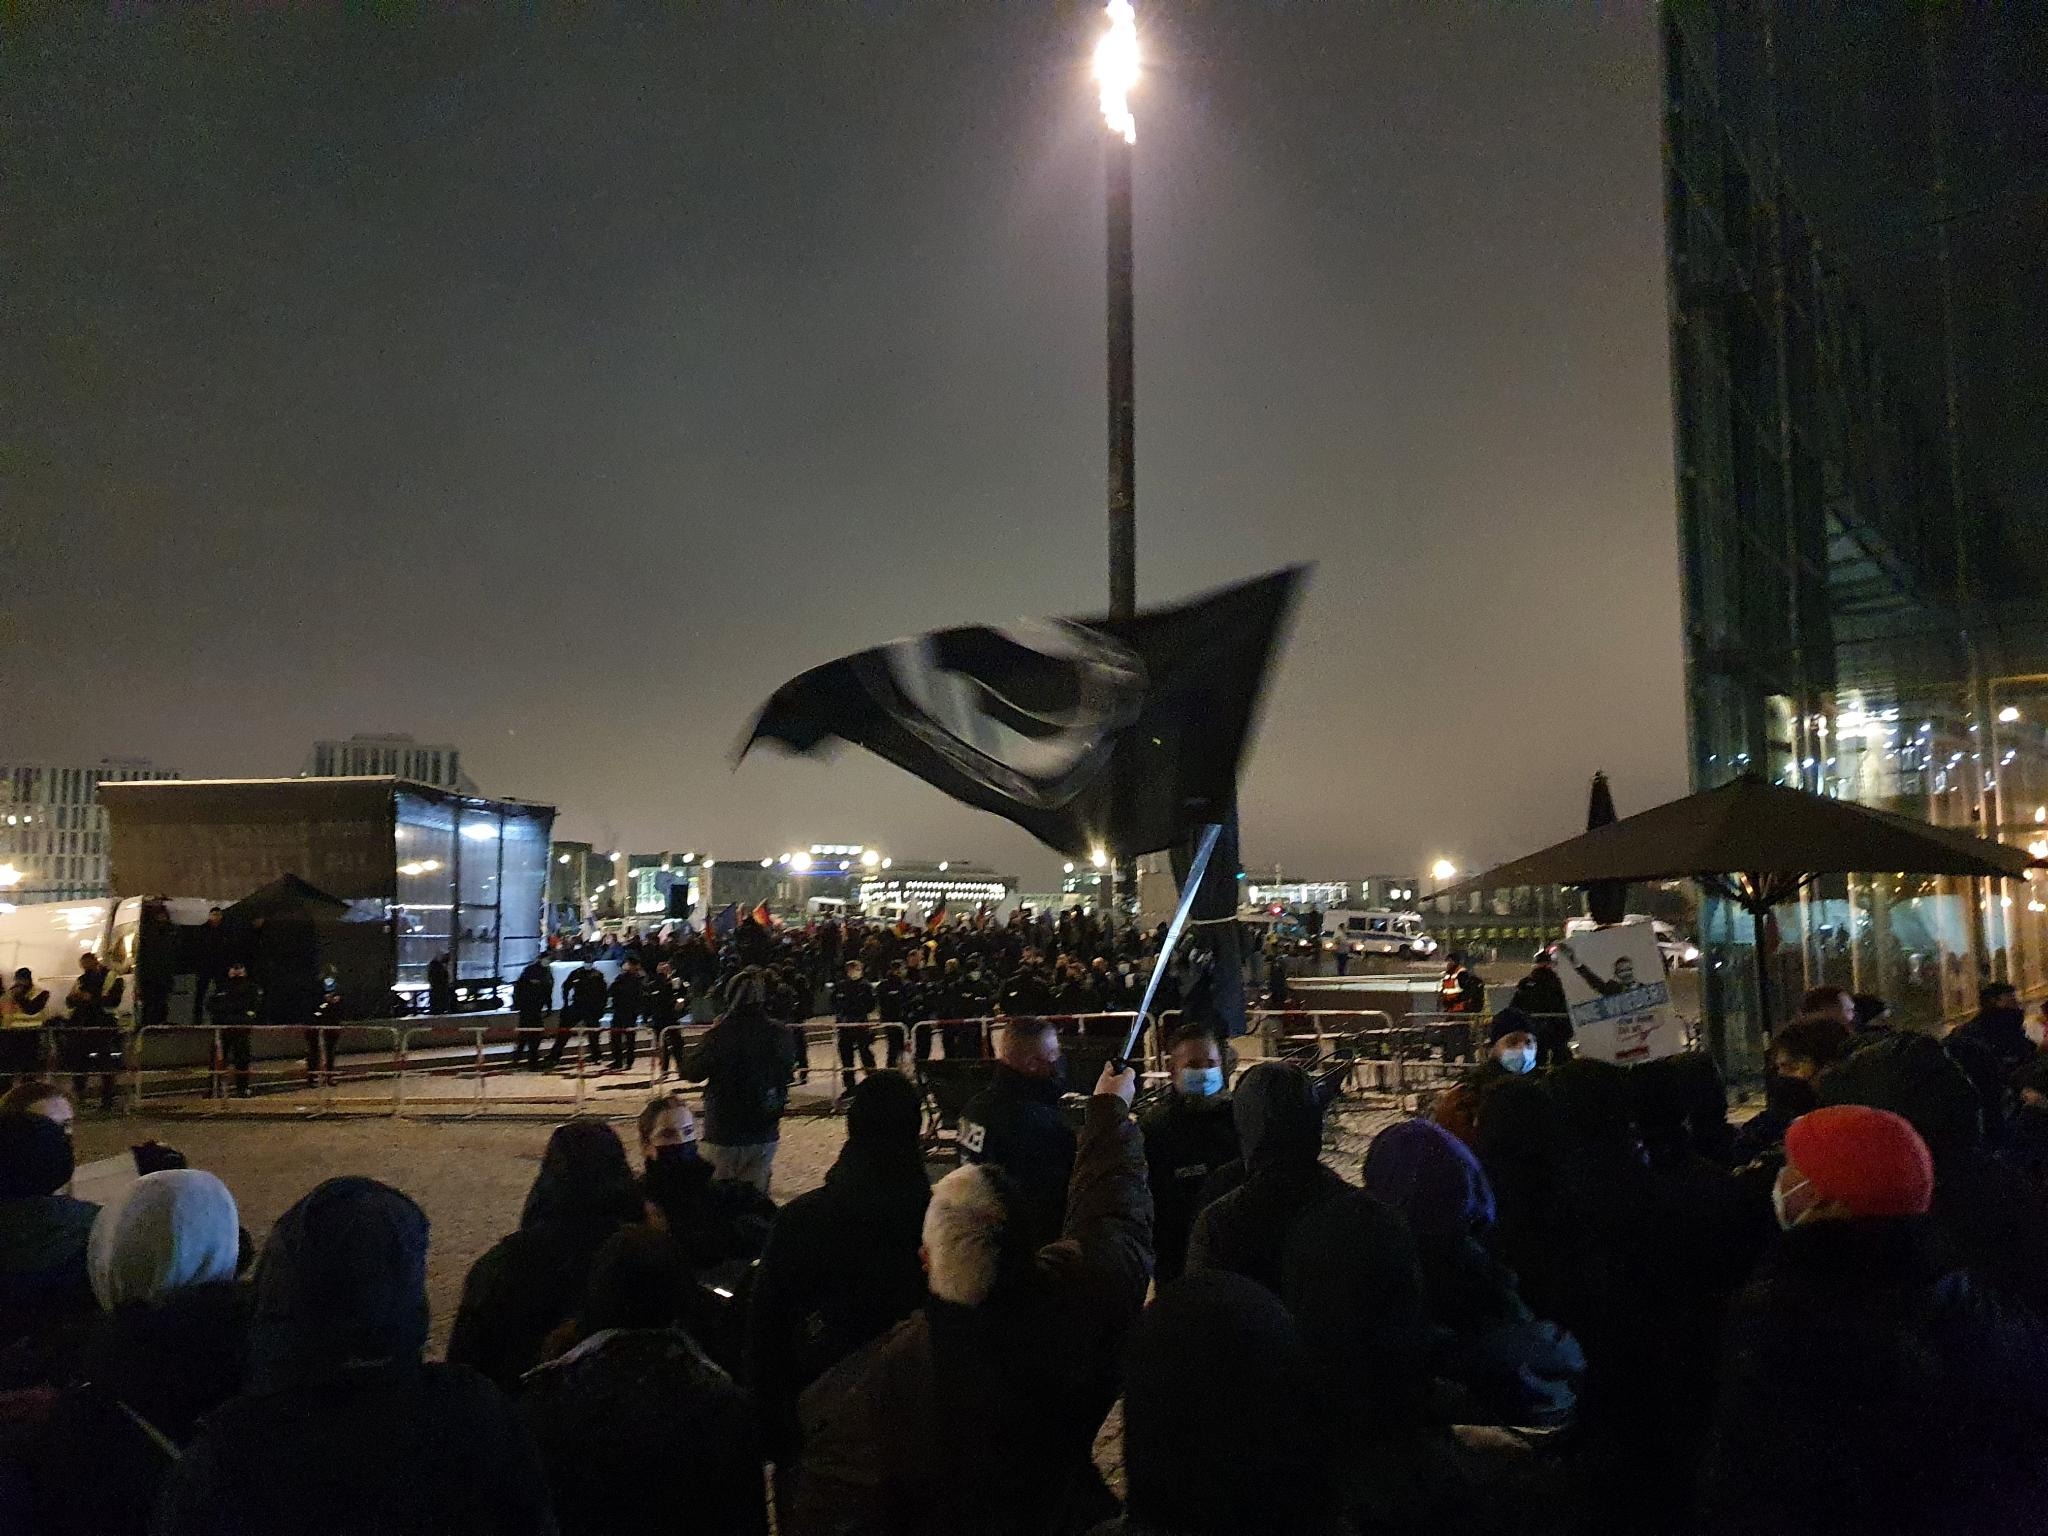 Eine Gruppe von antifaschistischen Demonstrant:innen steht im dunklen der Polizei gegenüber. In der Bildmitte wird eine schwarze Antifafahne geschwenkt.